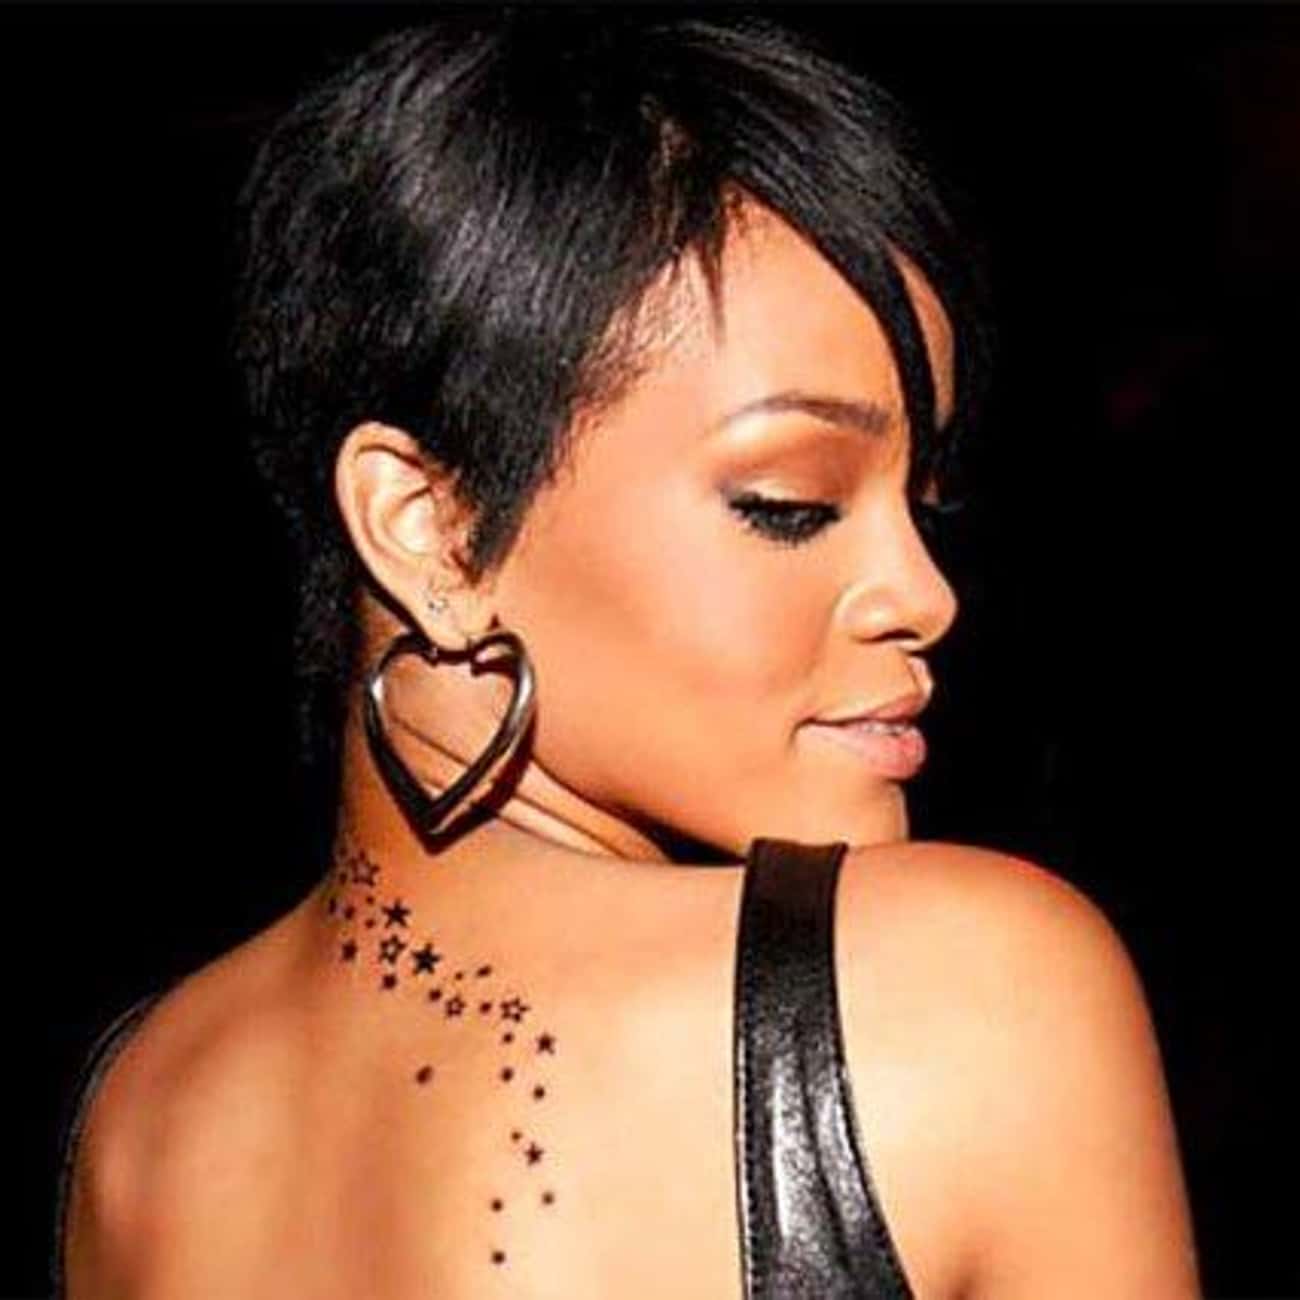 Rihanna's Trail of Stars Tattoo